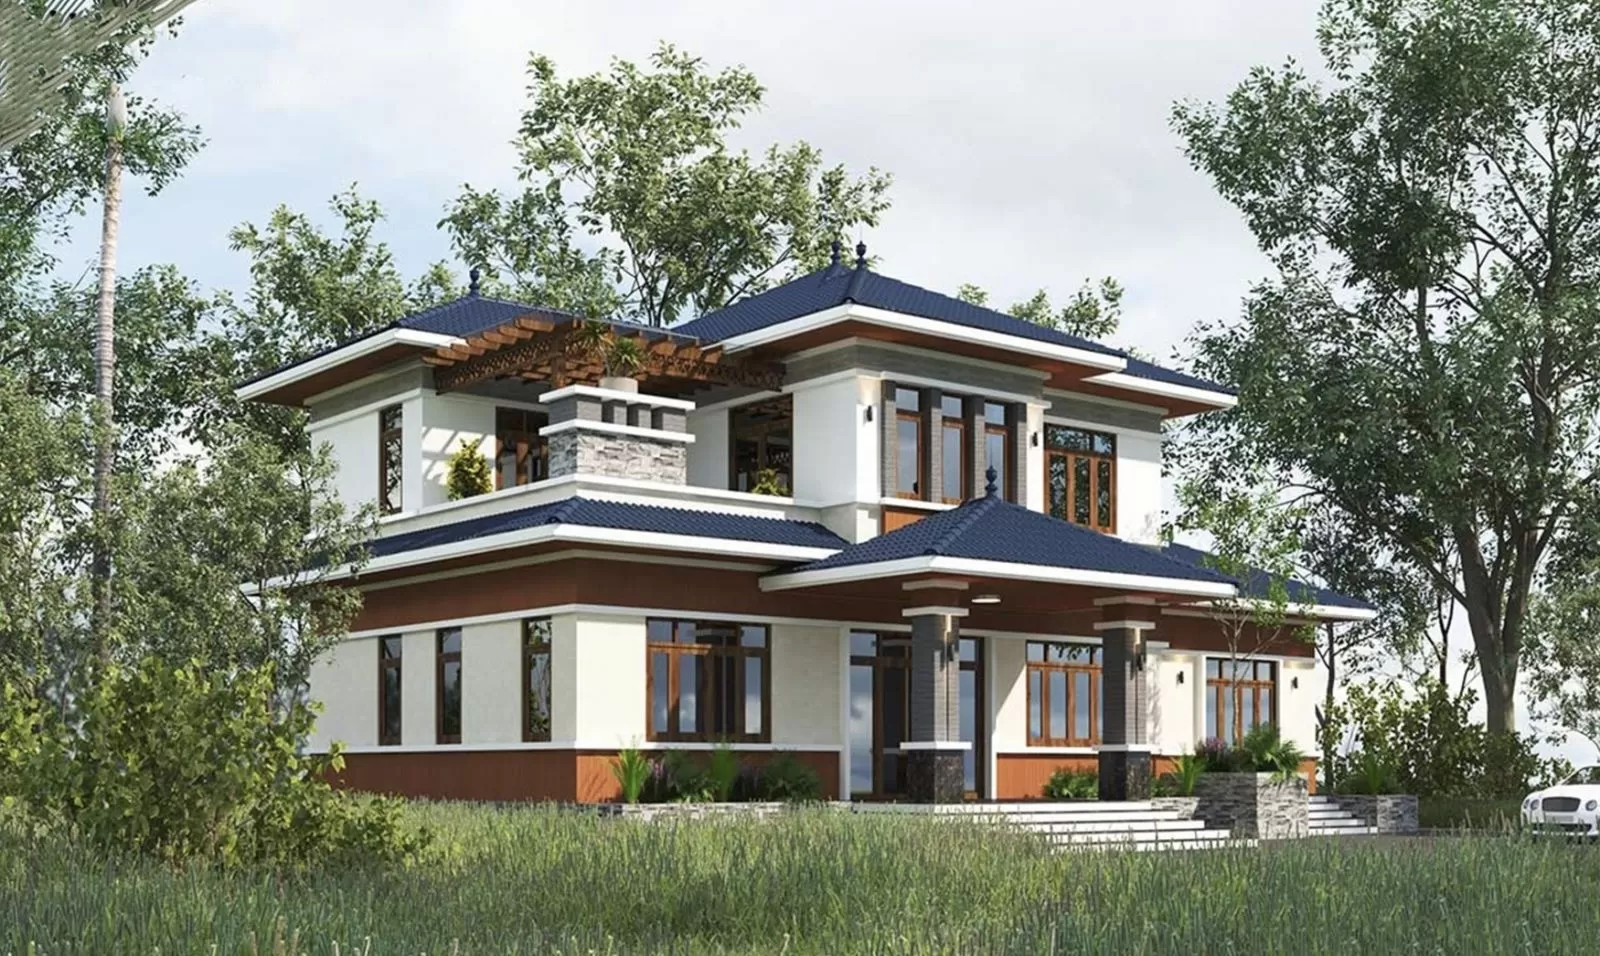 Với hai tầng, căn nhà vườn mái nhật có thể được thiết kế với nhiều không gian sống khác nhau cho mỗi độ tuổi